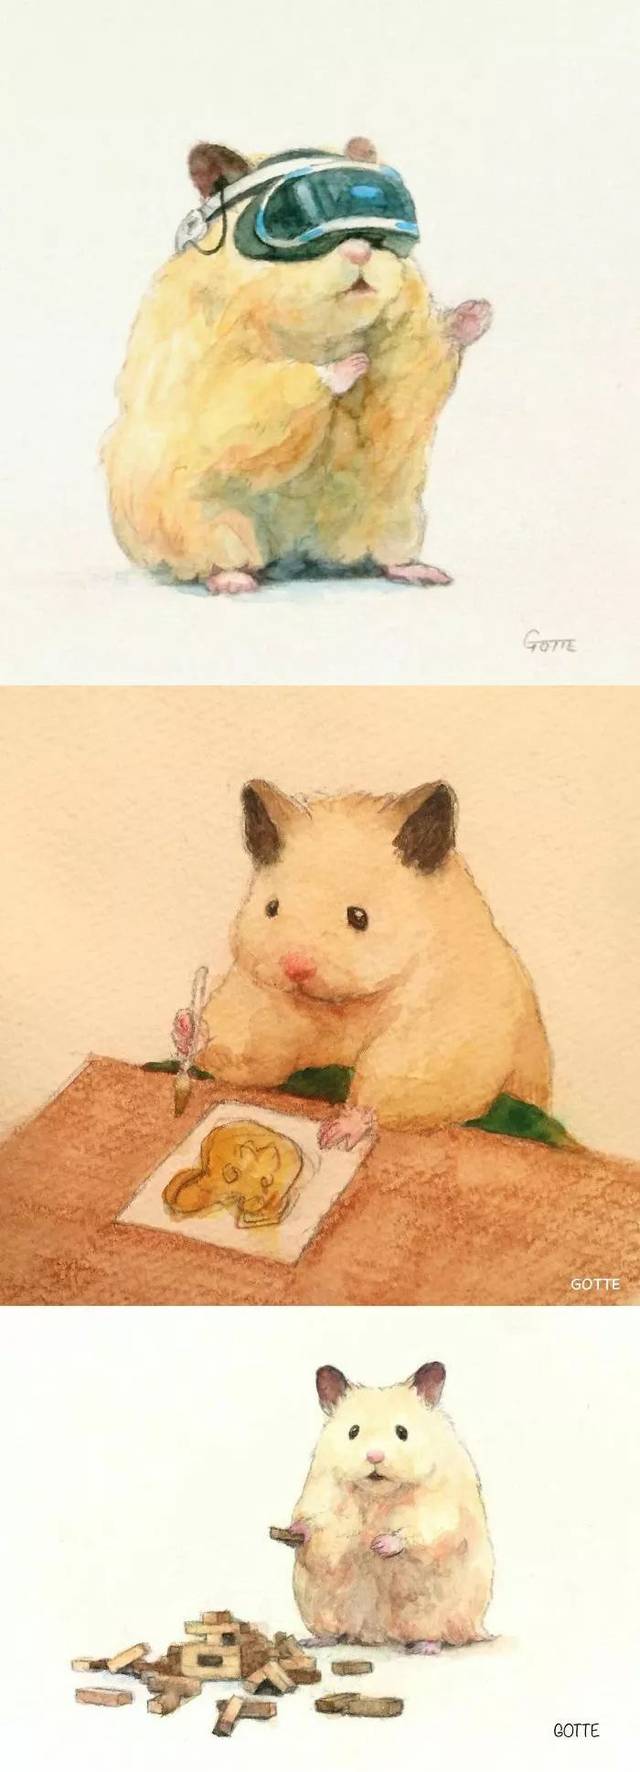 日本插画师Gotte笔下的超萌小仓鼠